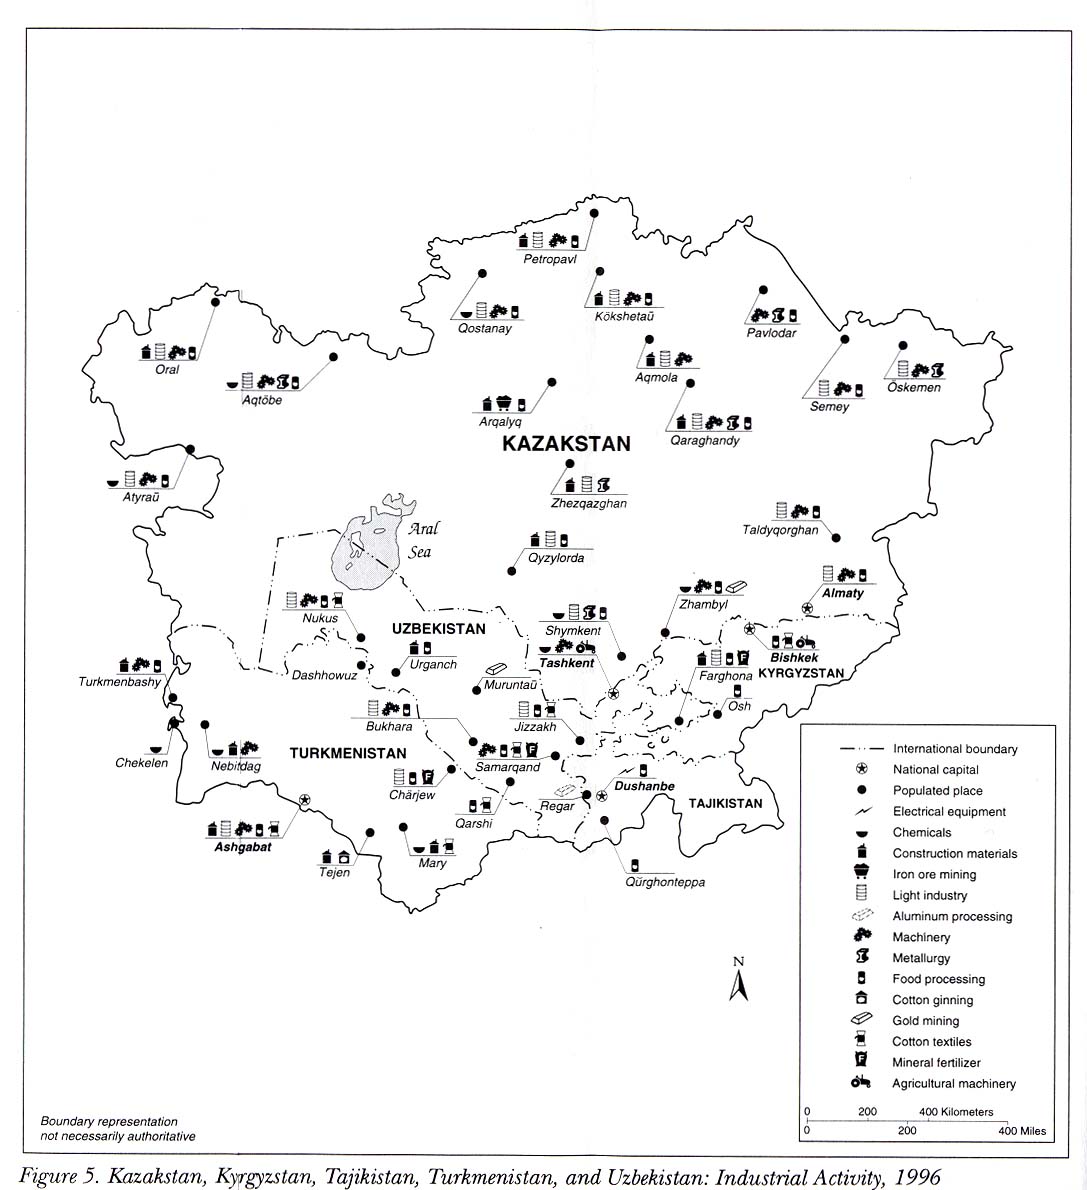 Mapa de la Actividad Industrial de Kazajistán Kirguistán, Tayikistán, Turkmenistán y Uzbekistán